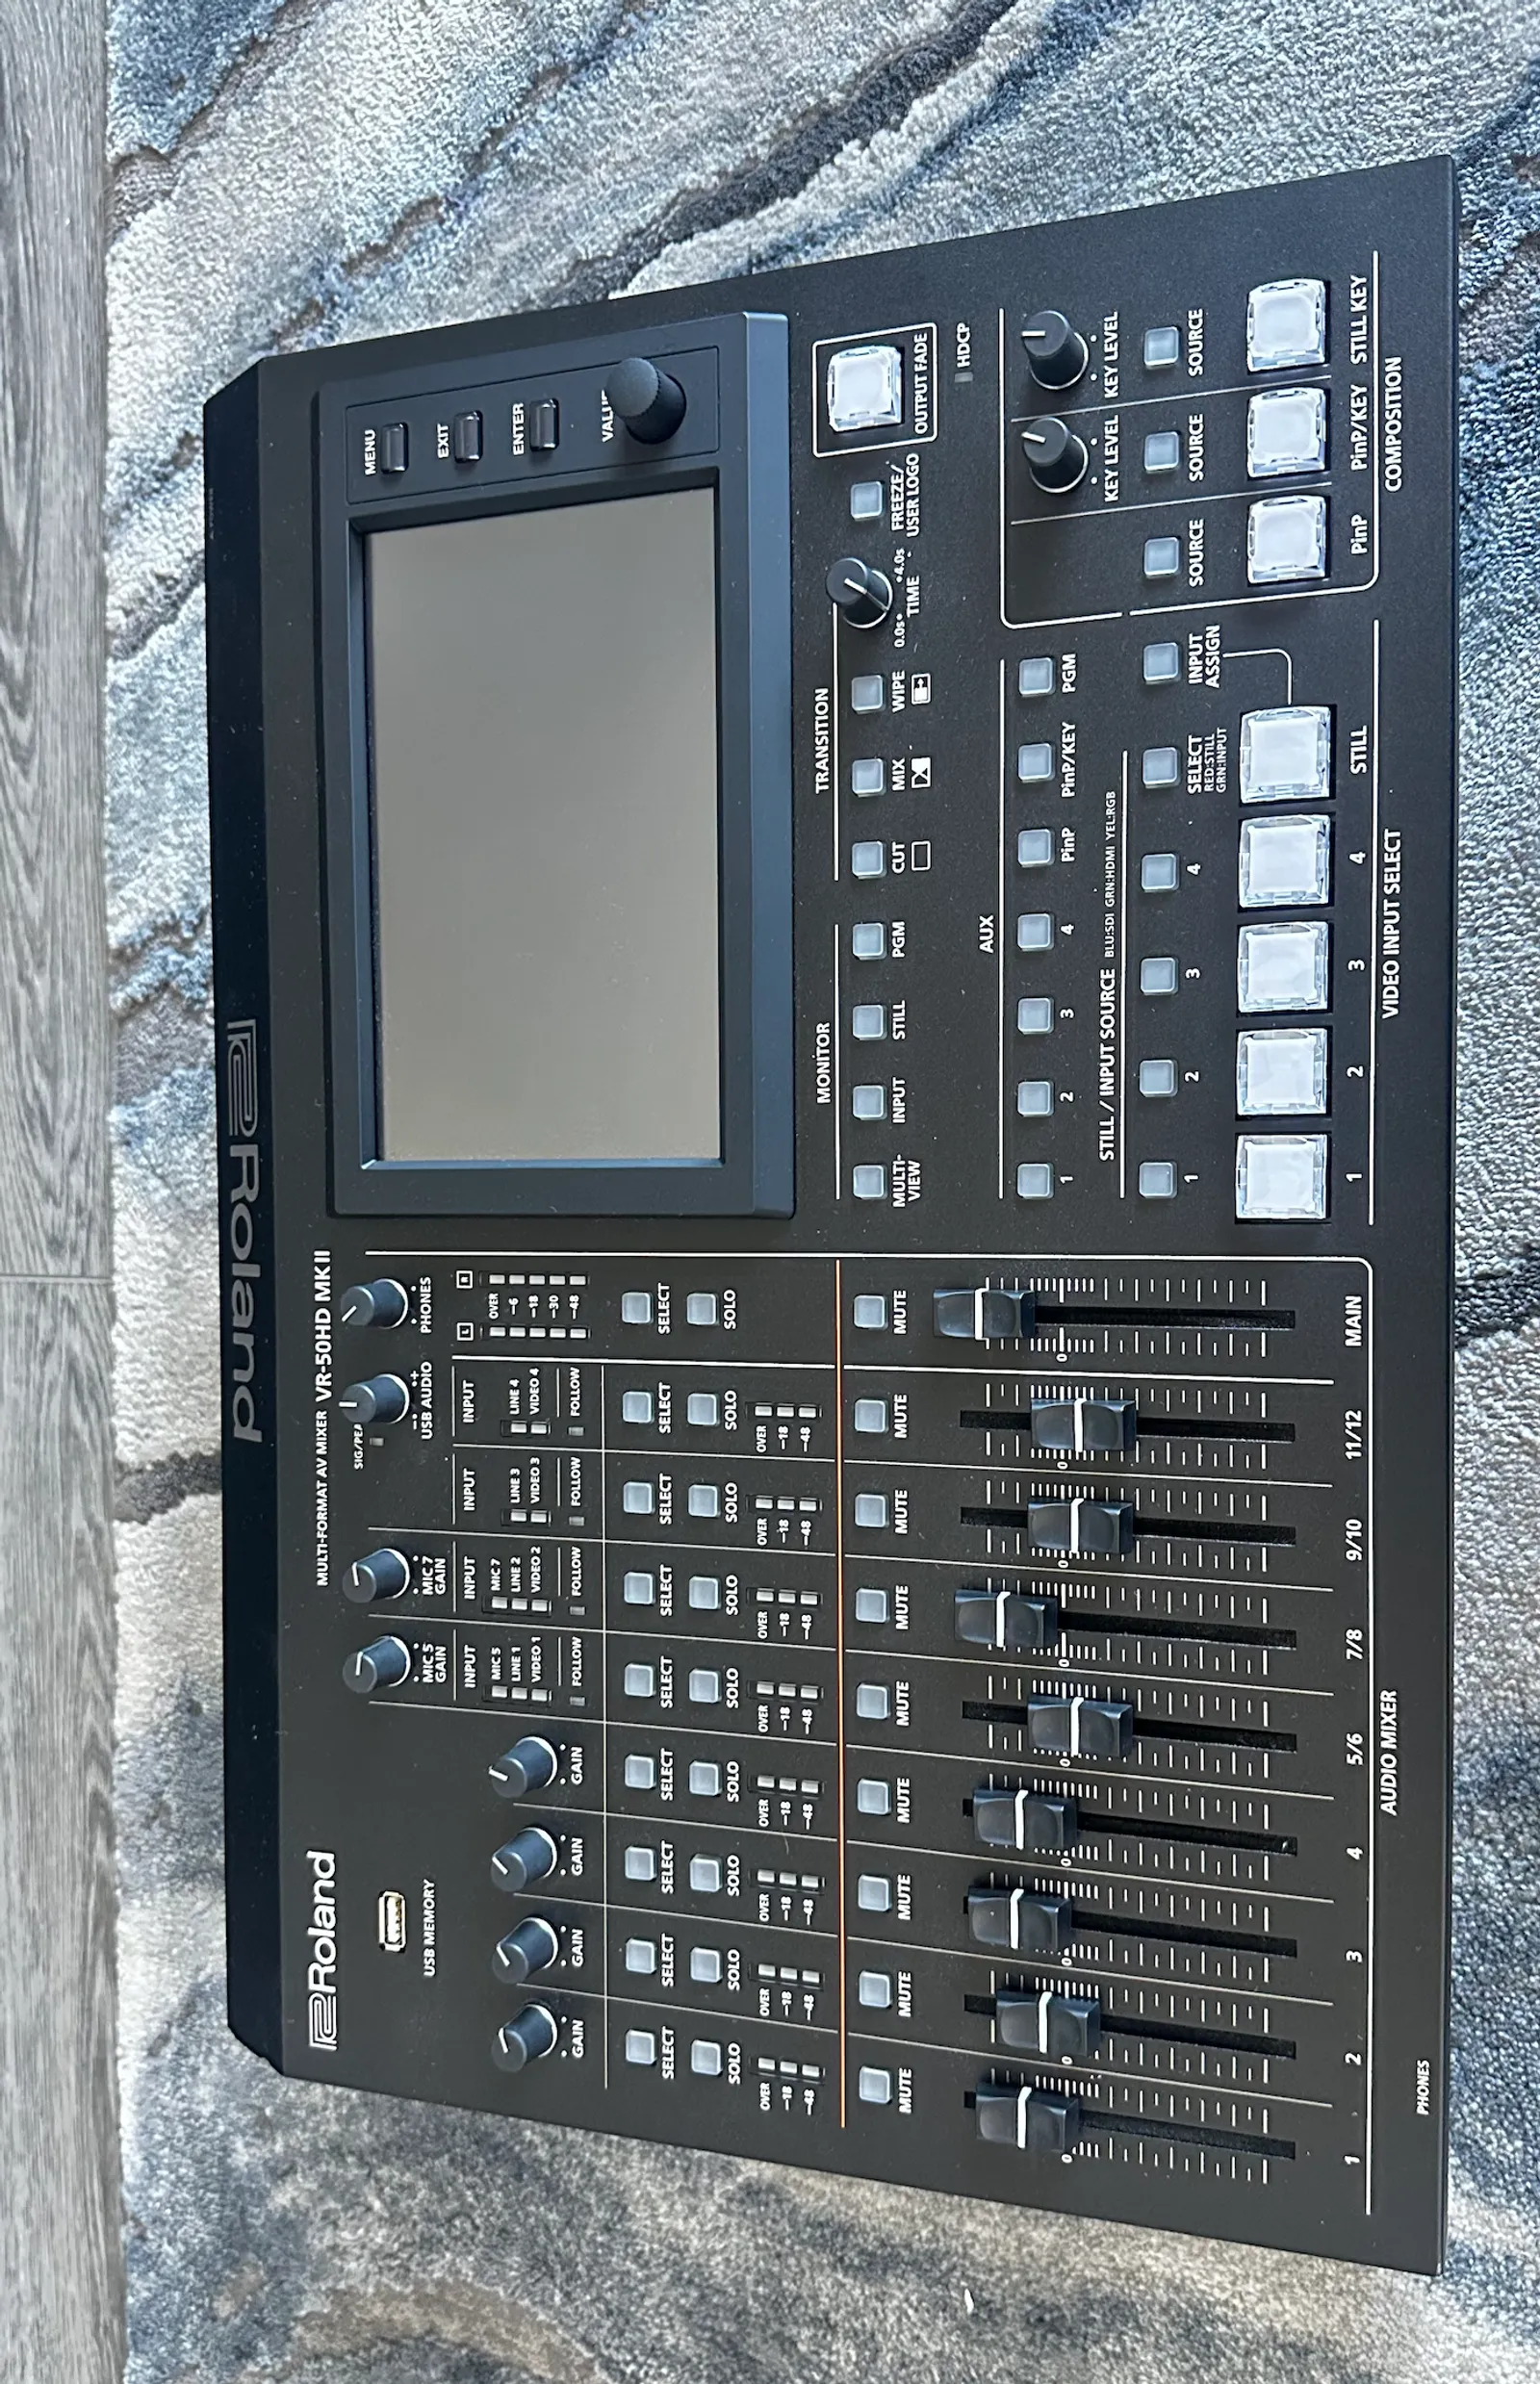 Roland VR-50HD MK II Multi-Format AV Mixer with USB 3.0 Streaming